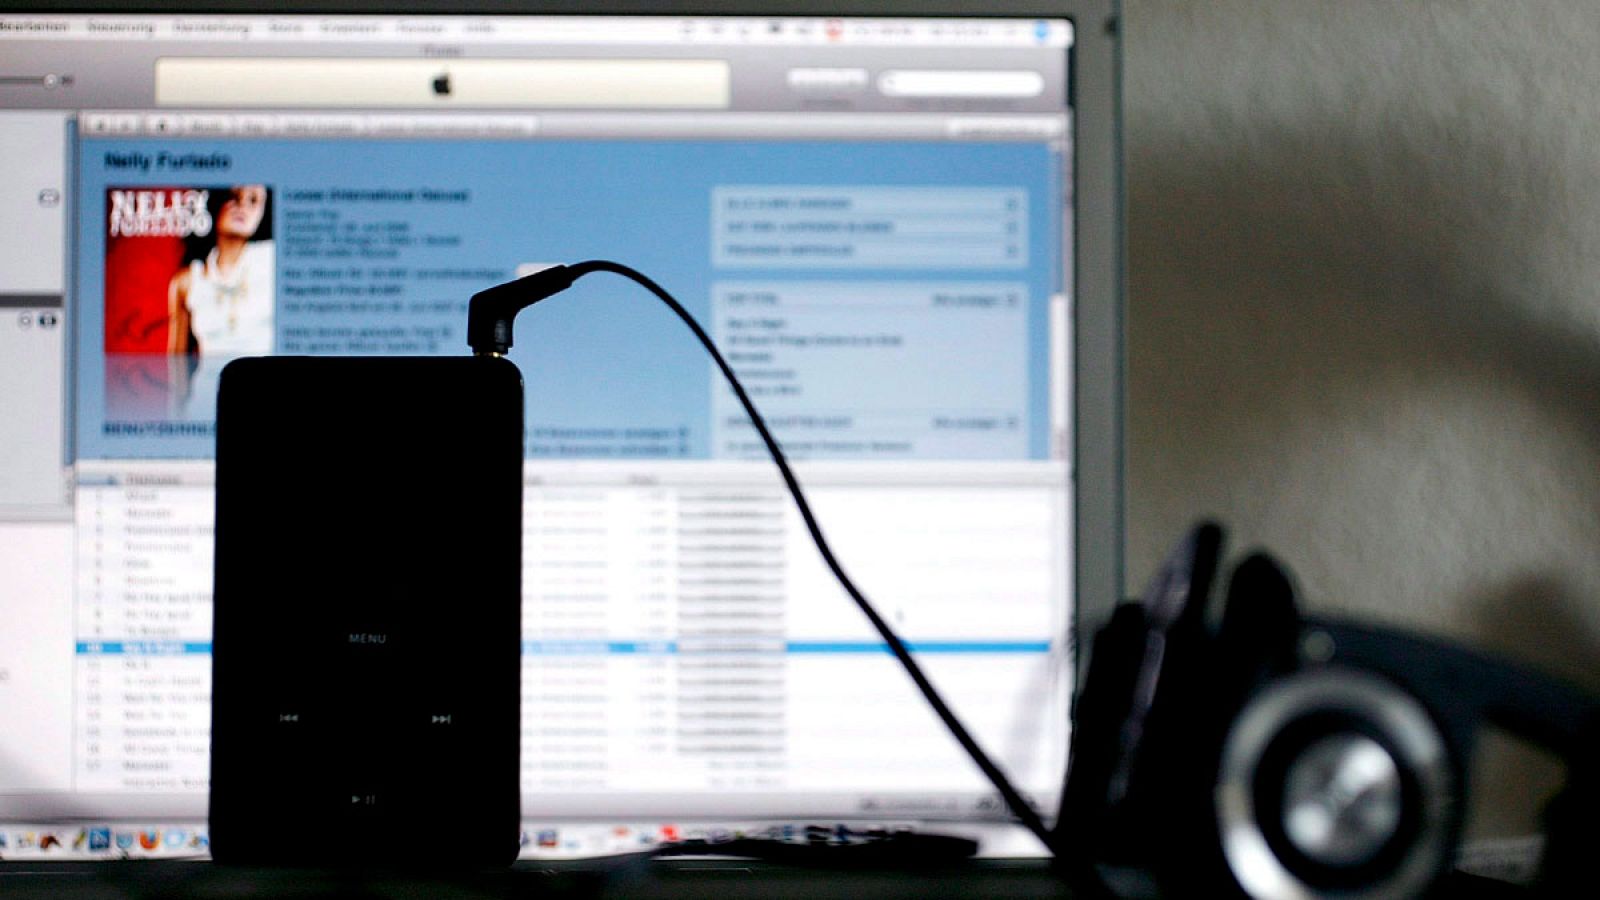 Fotografía de archivo en la que se observa un reproductor de música iPod frente a un "iTunes Music Store" en un ordenador portátil.